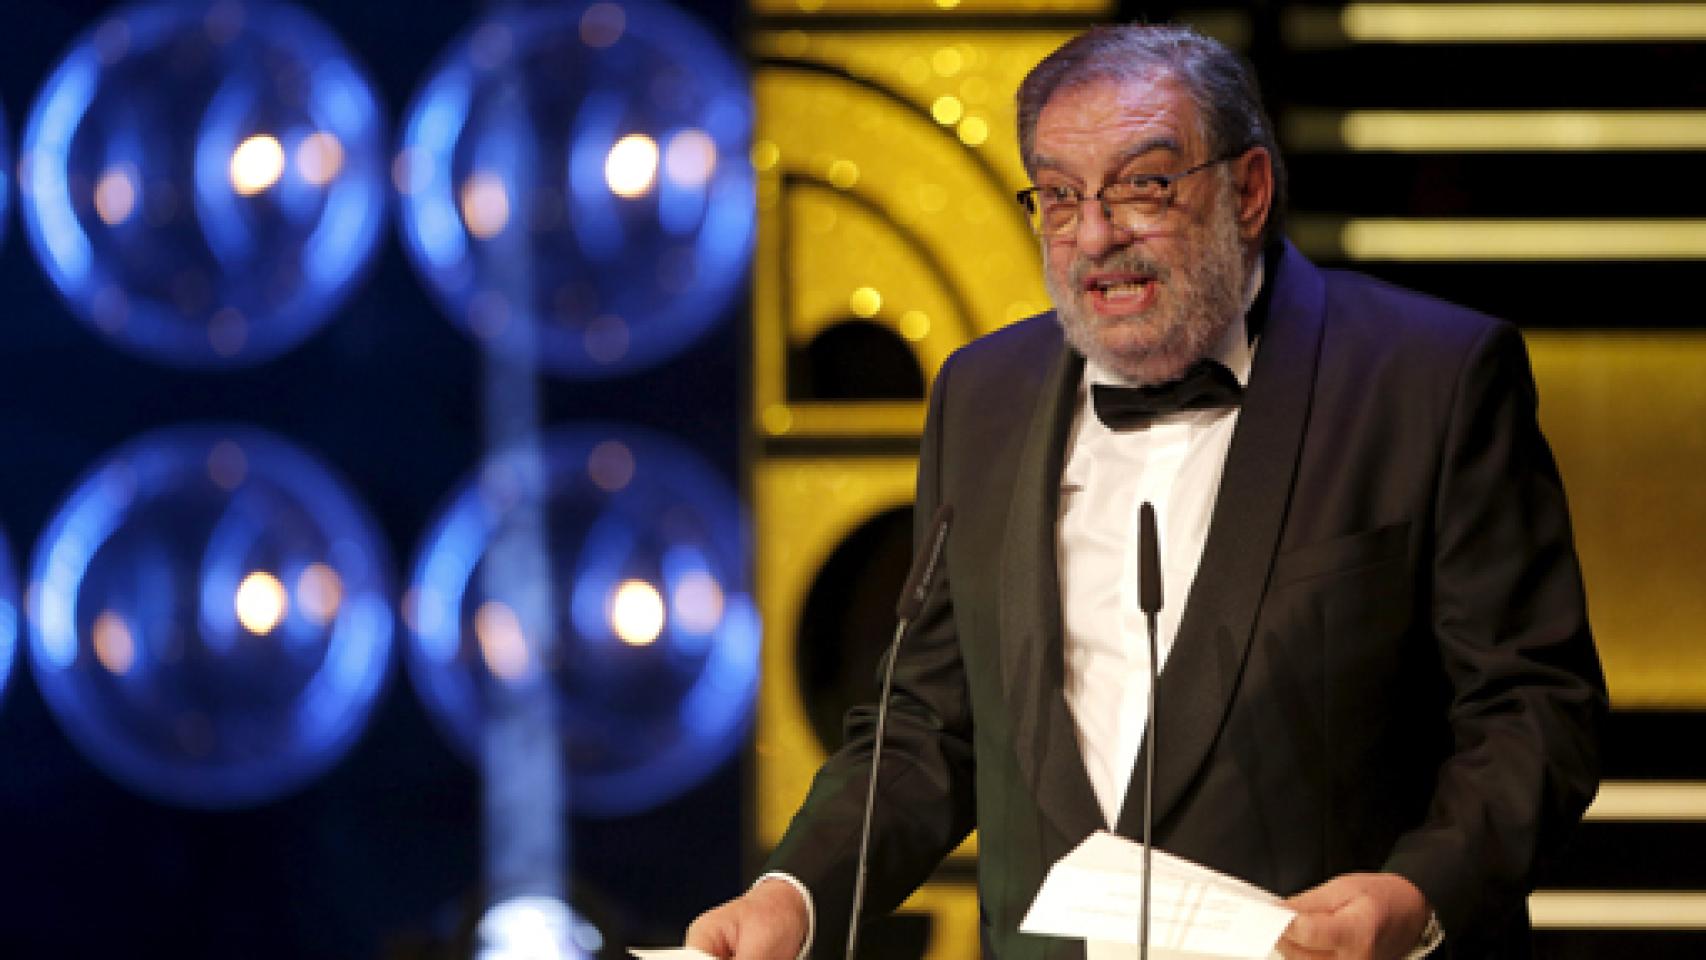 Image: Dimite González Macho como presidente de la Academia de Cine